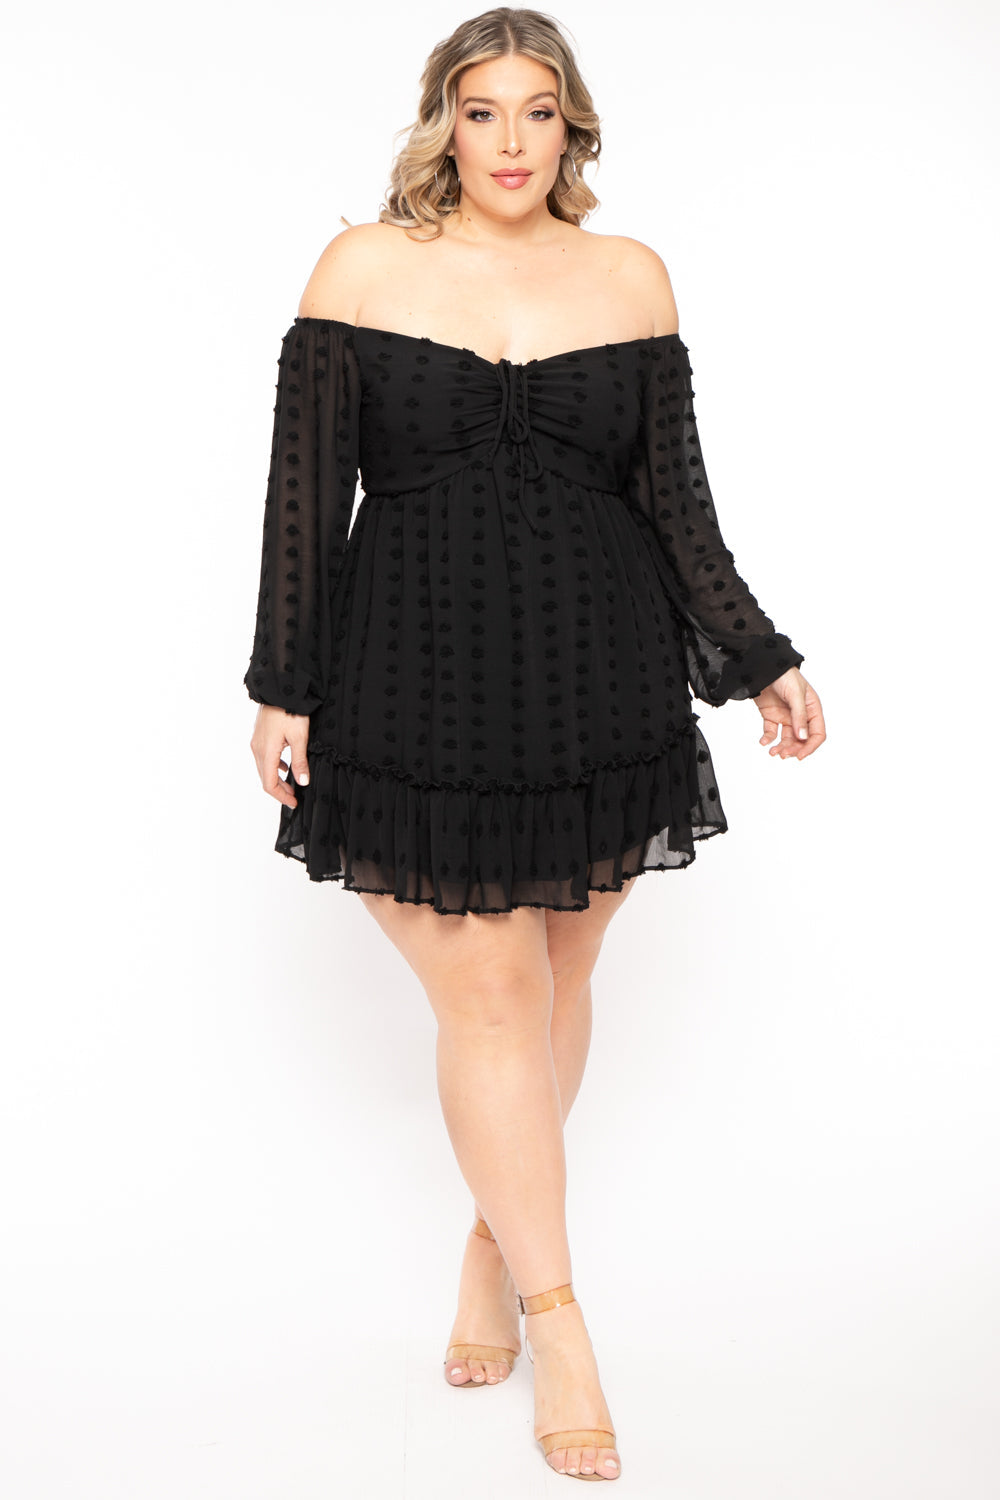 Curvy Sense Dresses Plus Size Zariah Chiffon Dot Dress  - Black